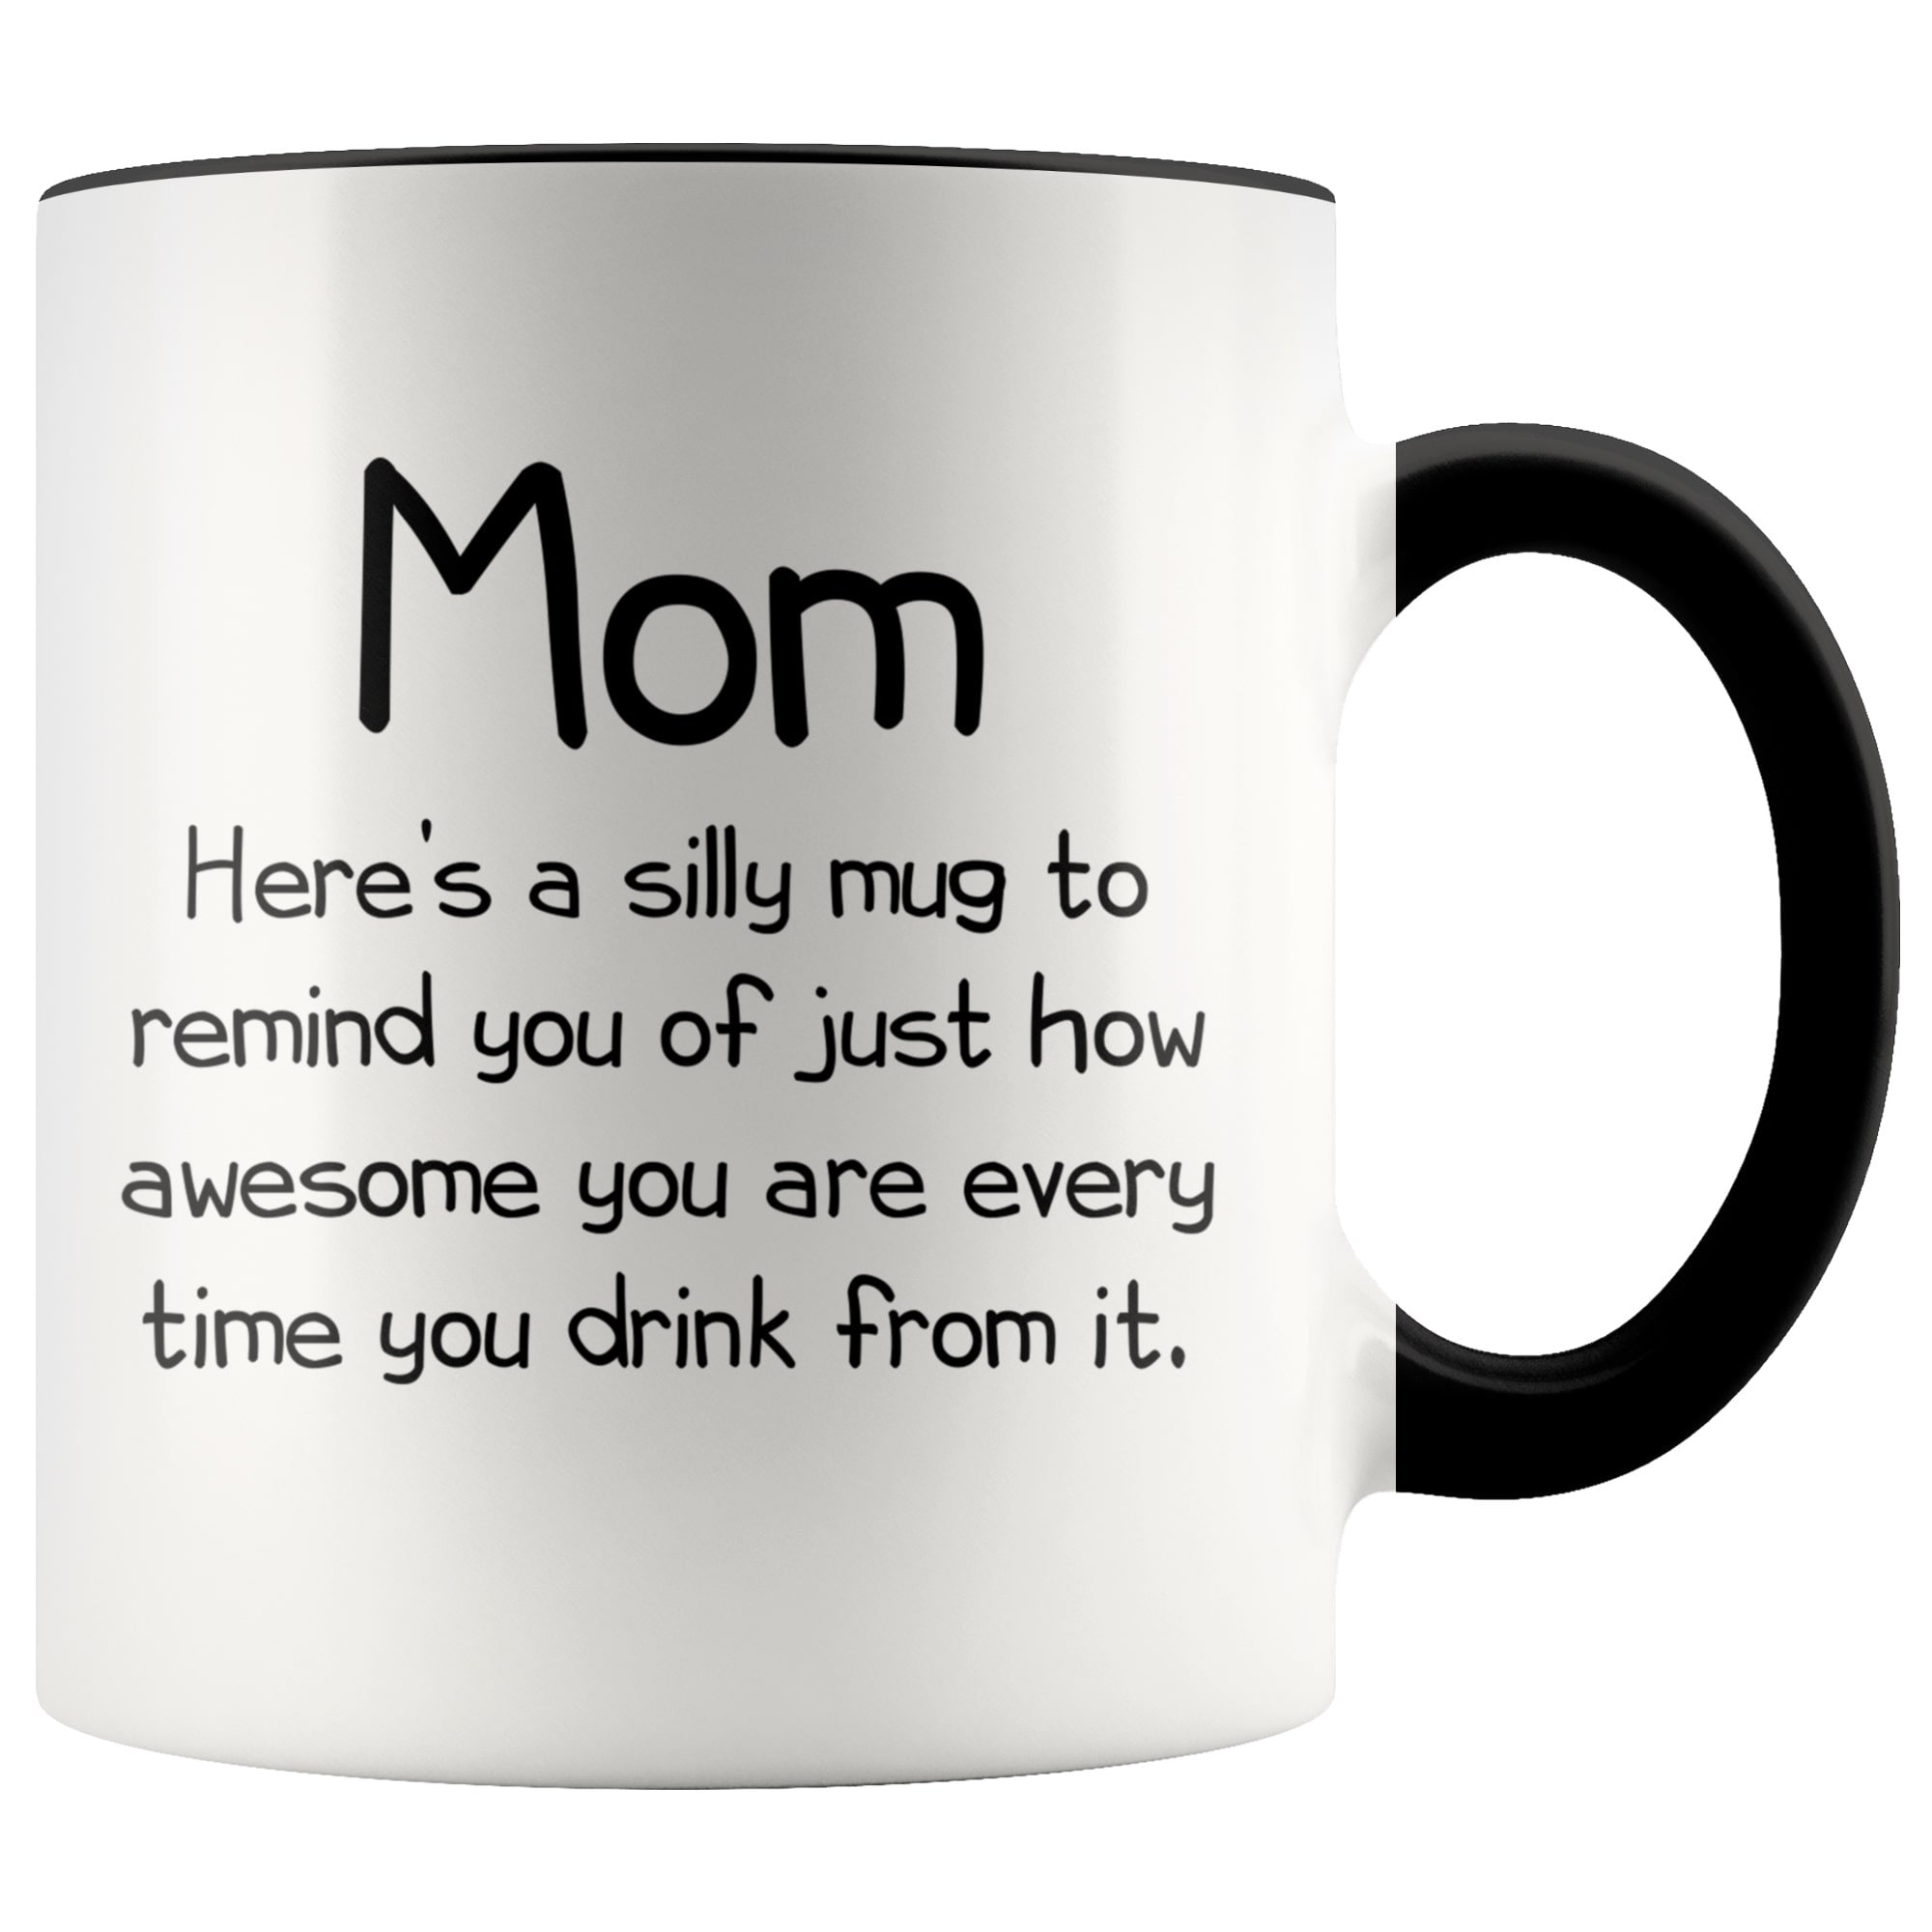 Gifts for Mom, My Nickname Is Mom Funny Coffee Mug, Mom Christmas